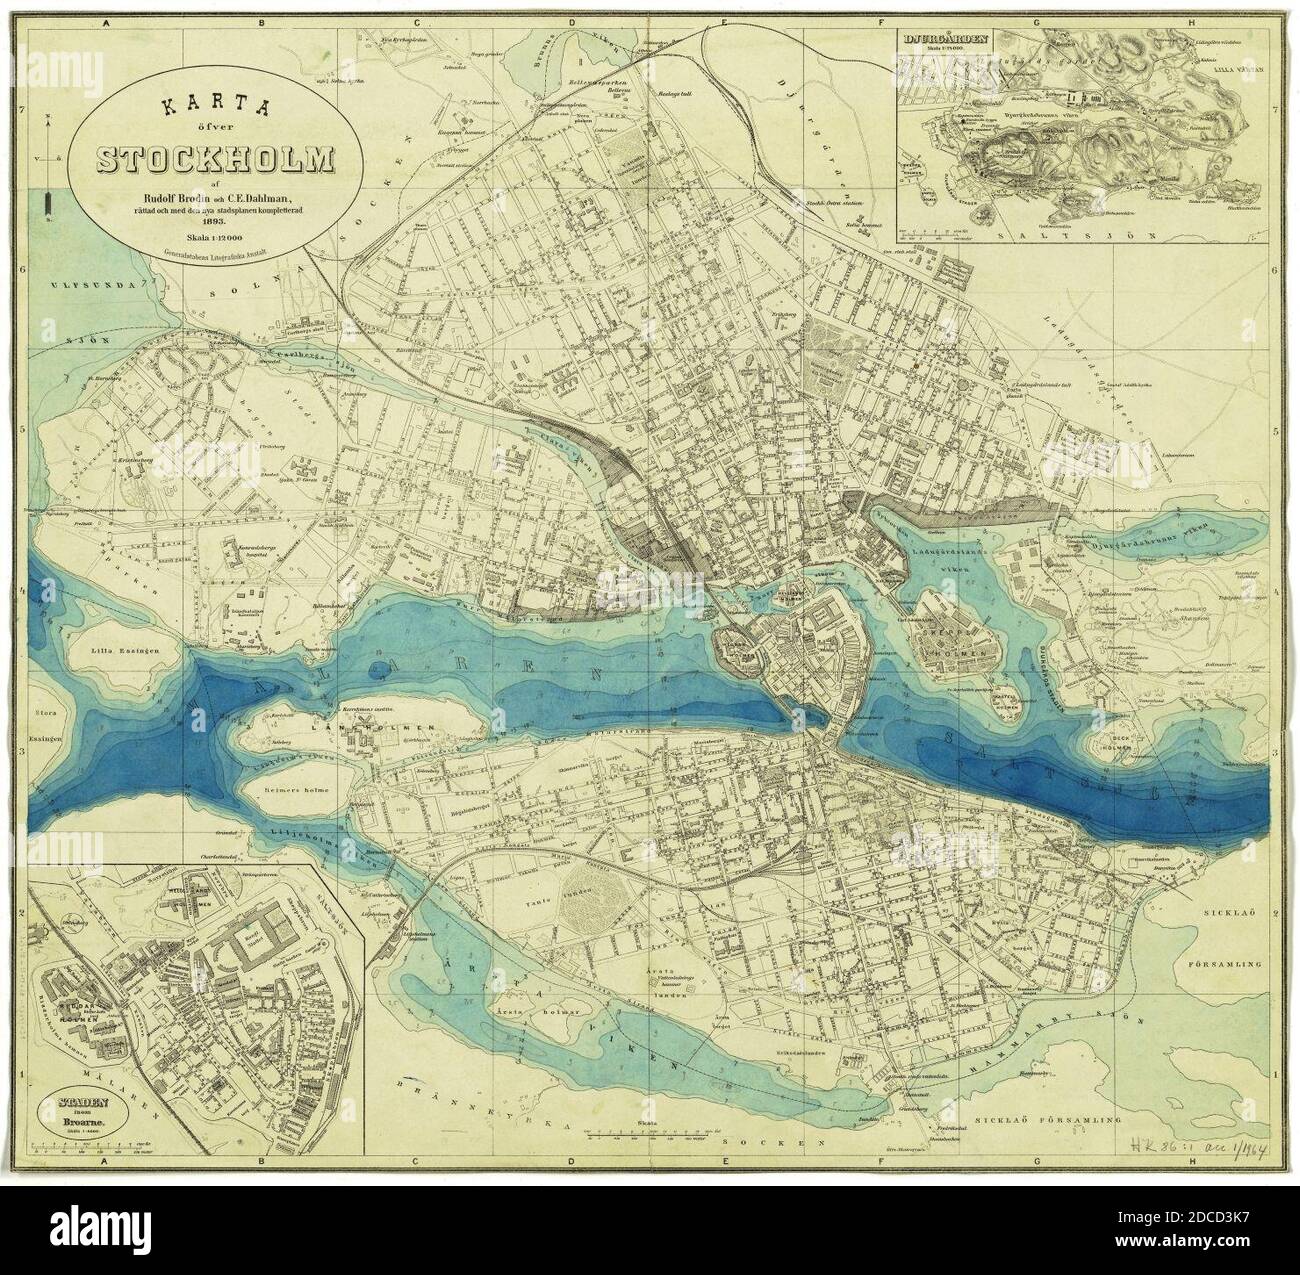 Karta över Stockholm med detalj av Gamla stan och Djurgården samt djupanvisningar 1893. Stock Photo